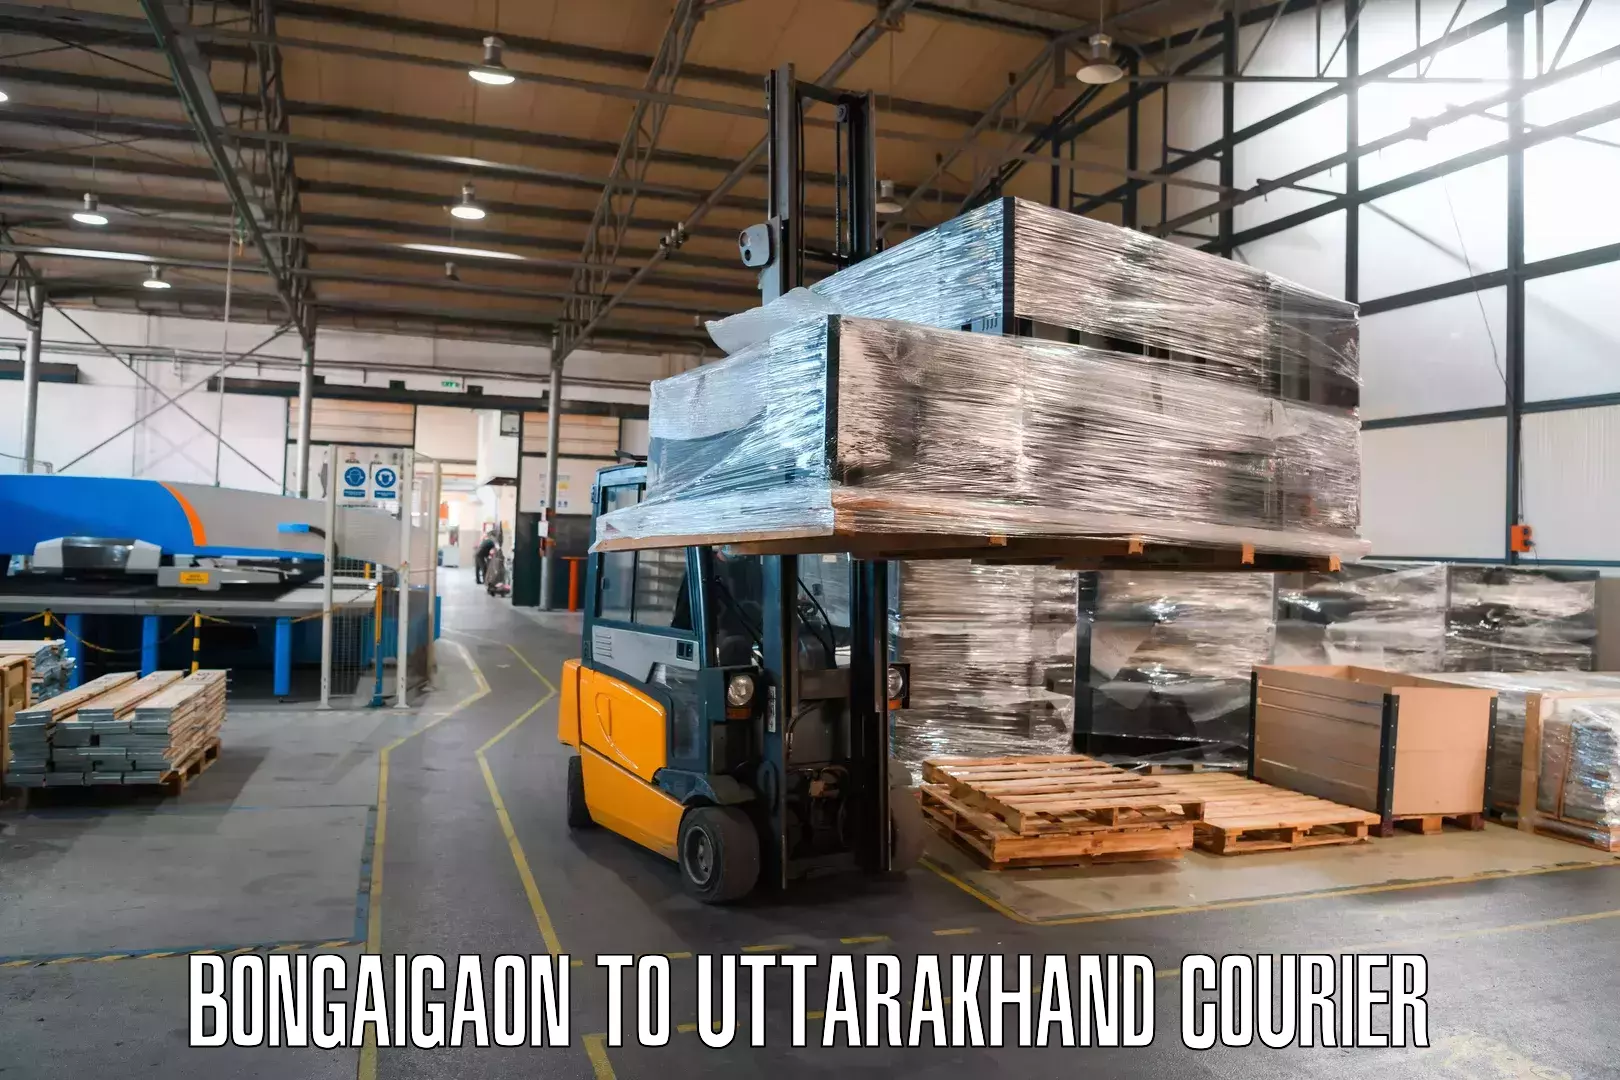 Multi-national courier services Bongaigaon to Uttarakhand